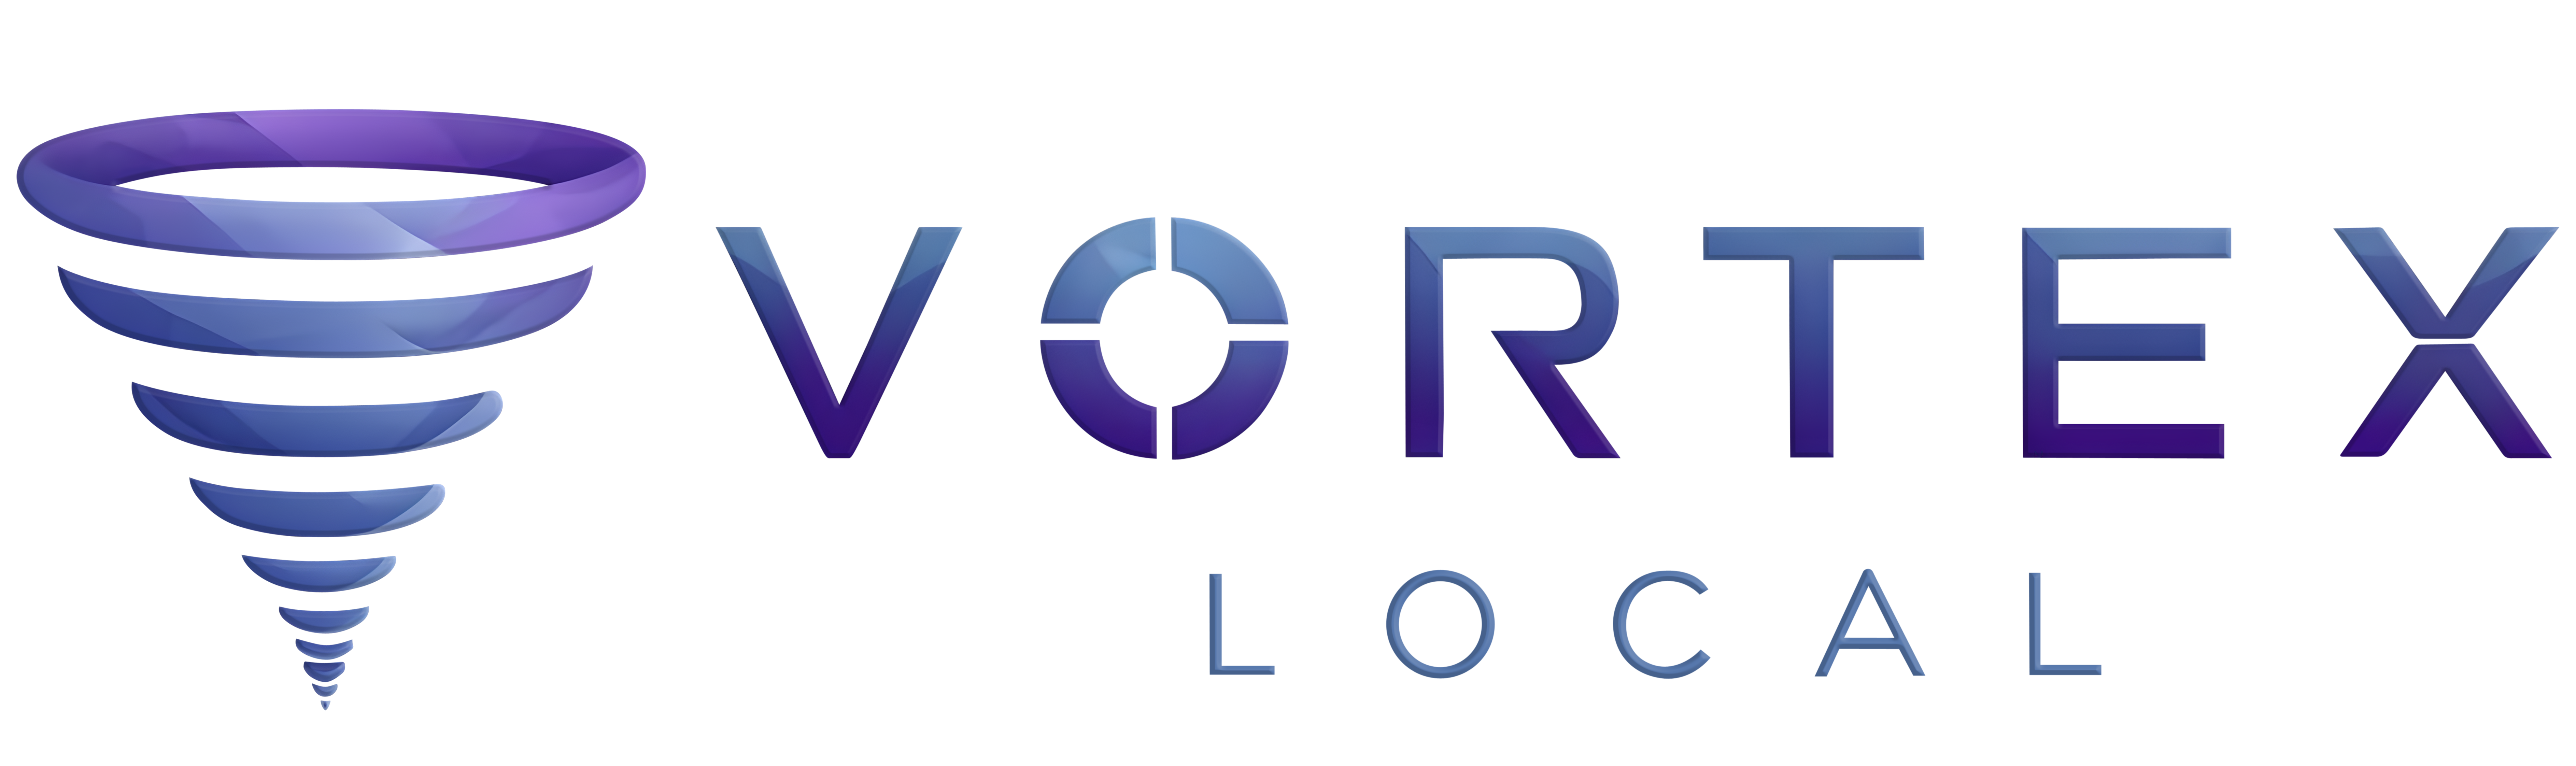 Vortex Local